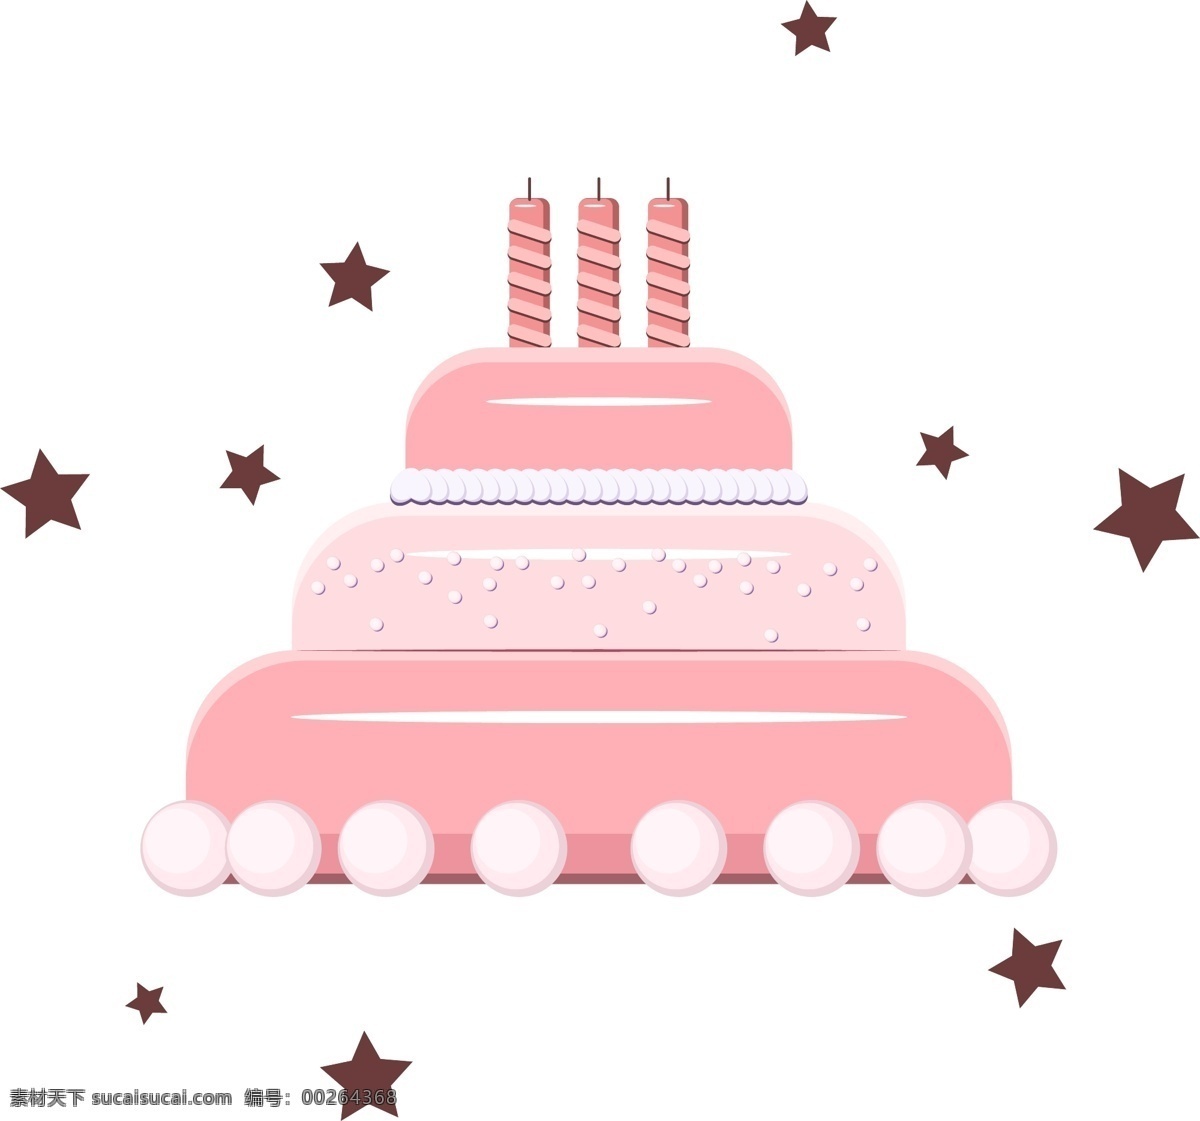 生日 礼物 生日蛋糕 装饰元素 粉色 公主风 可爱卡通